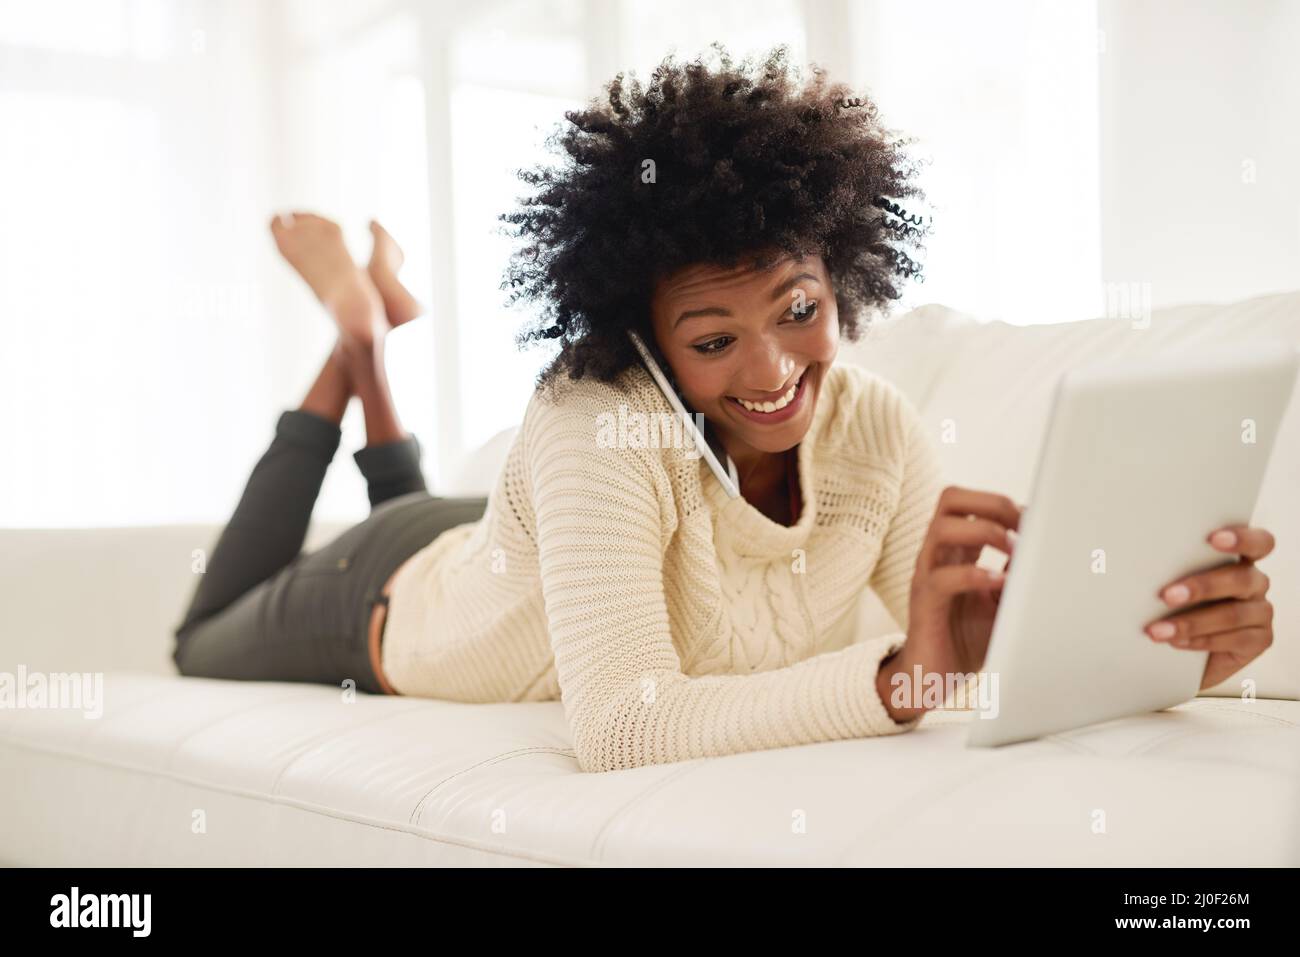 Im appena circa per leggere il vostro blog. Scatto di una giovane attraente utilizzando il suo cellulare e tablet mentre si trova sul divano a casa. Foto Stock